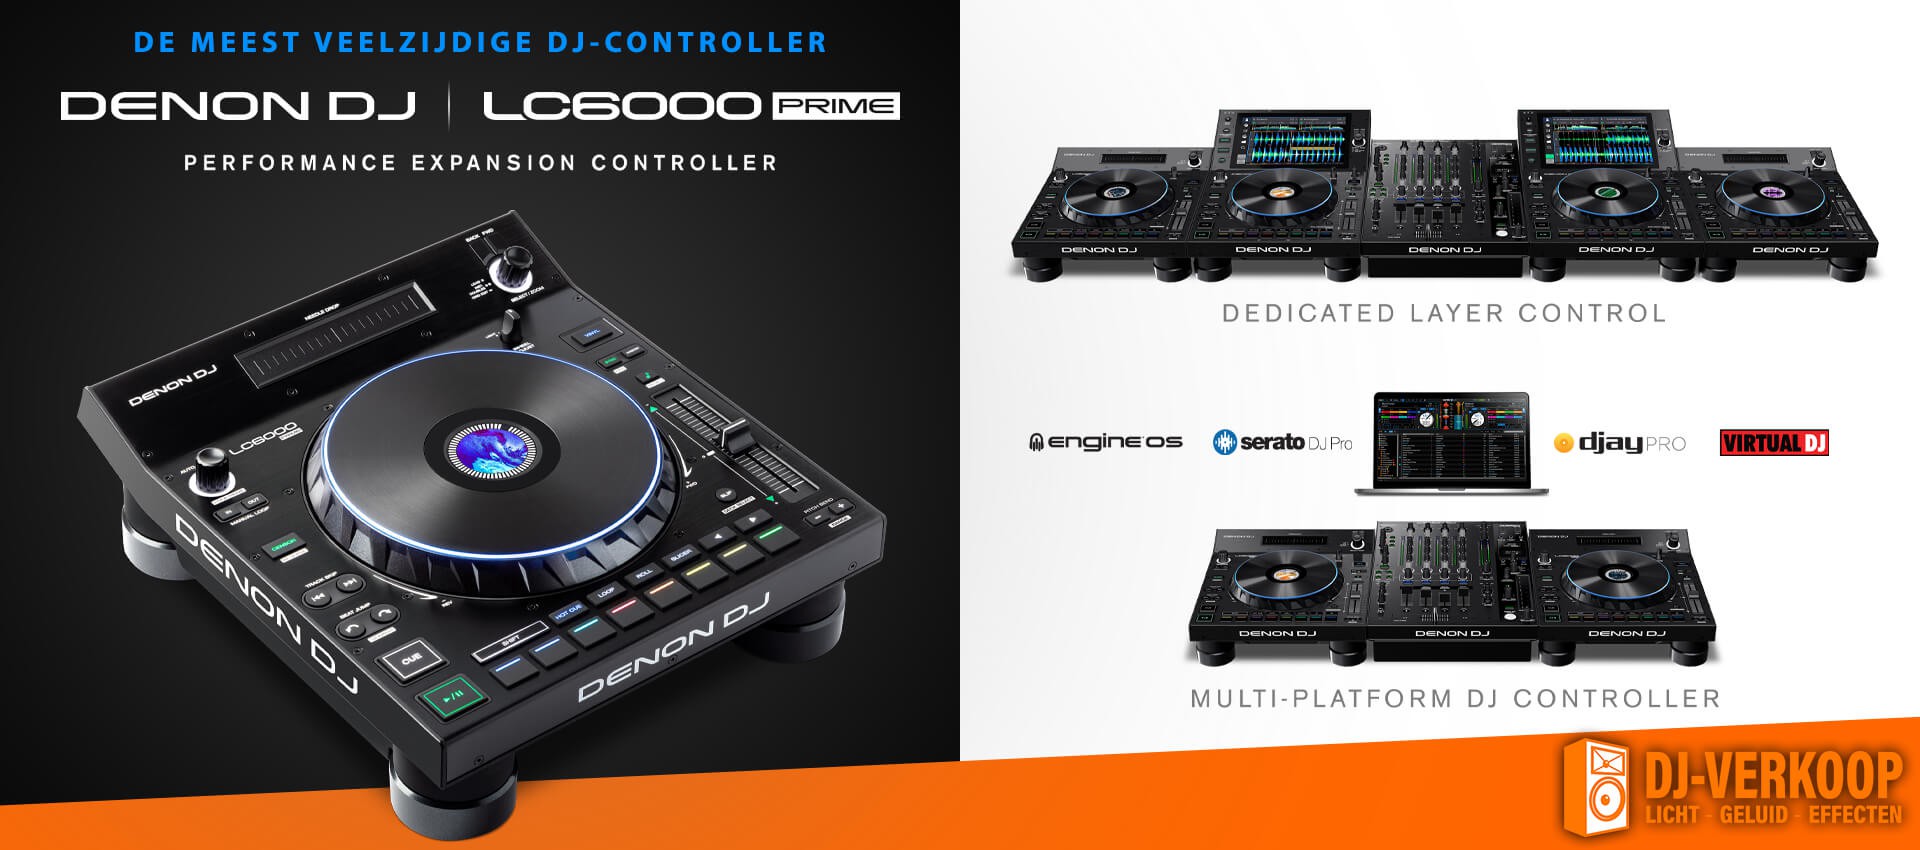 DE MEEST VEELZIJDIGE DJ-CONTROLLER | DENON DJ LC6000 PRIME